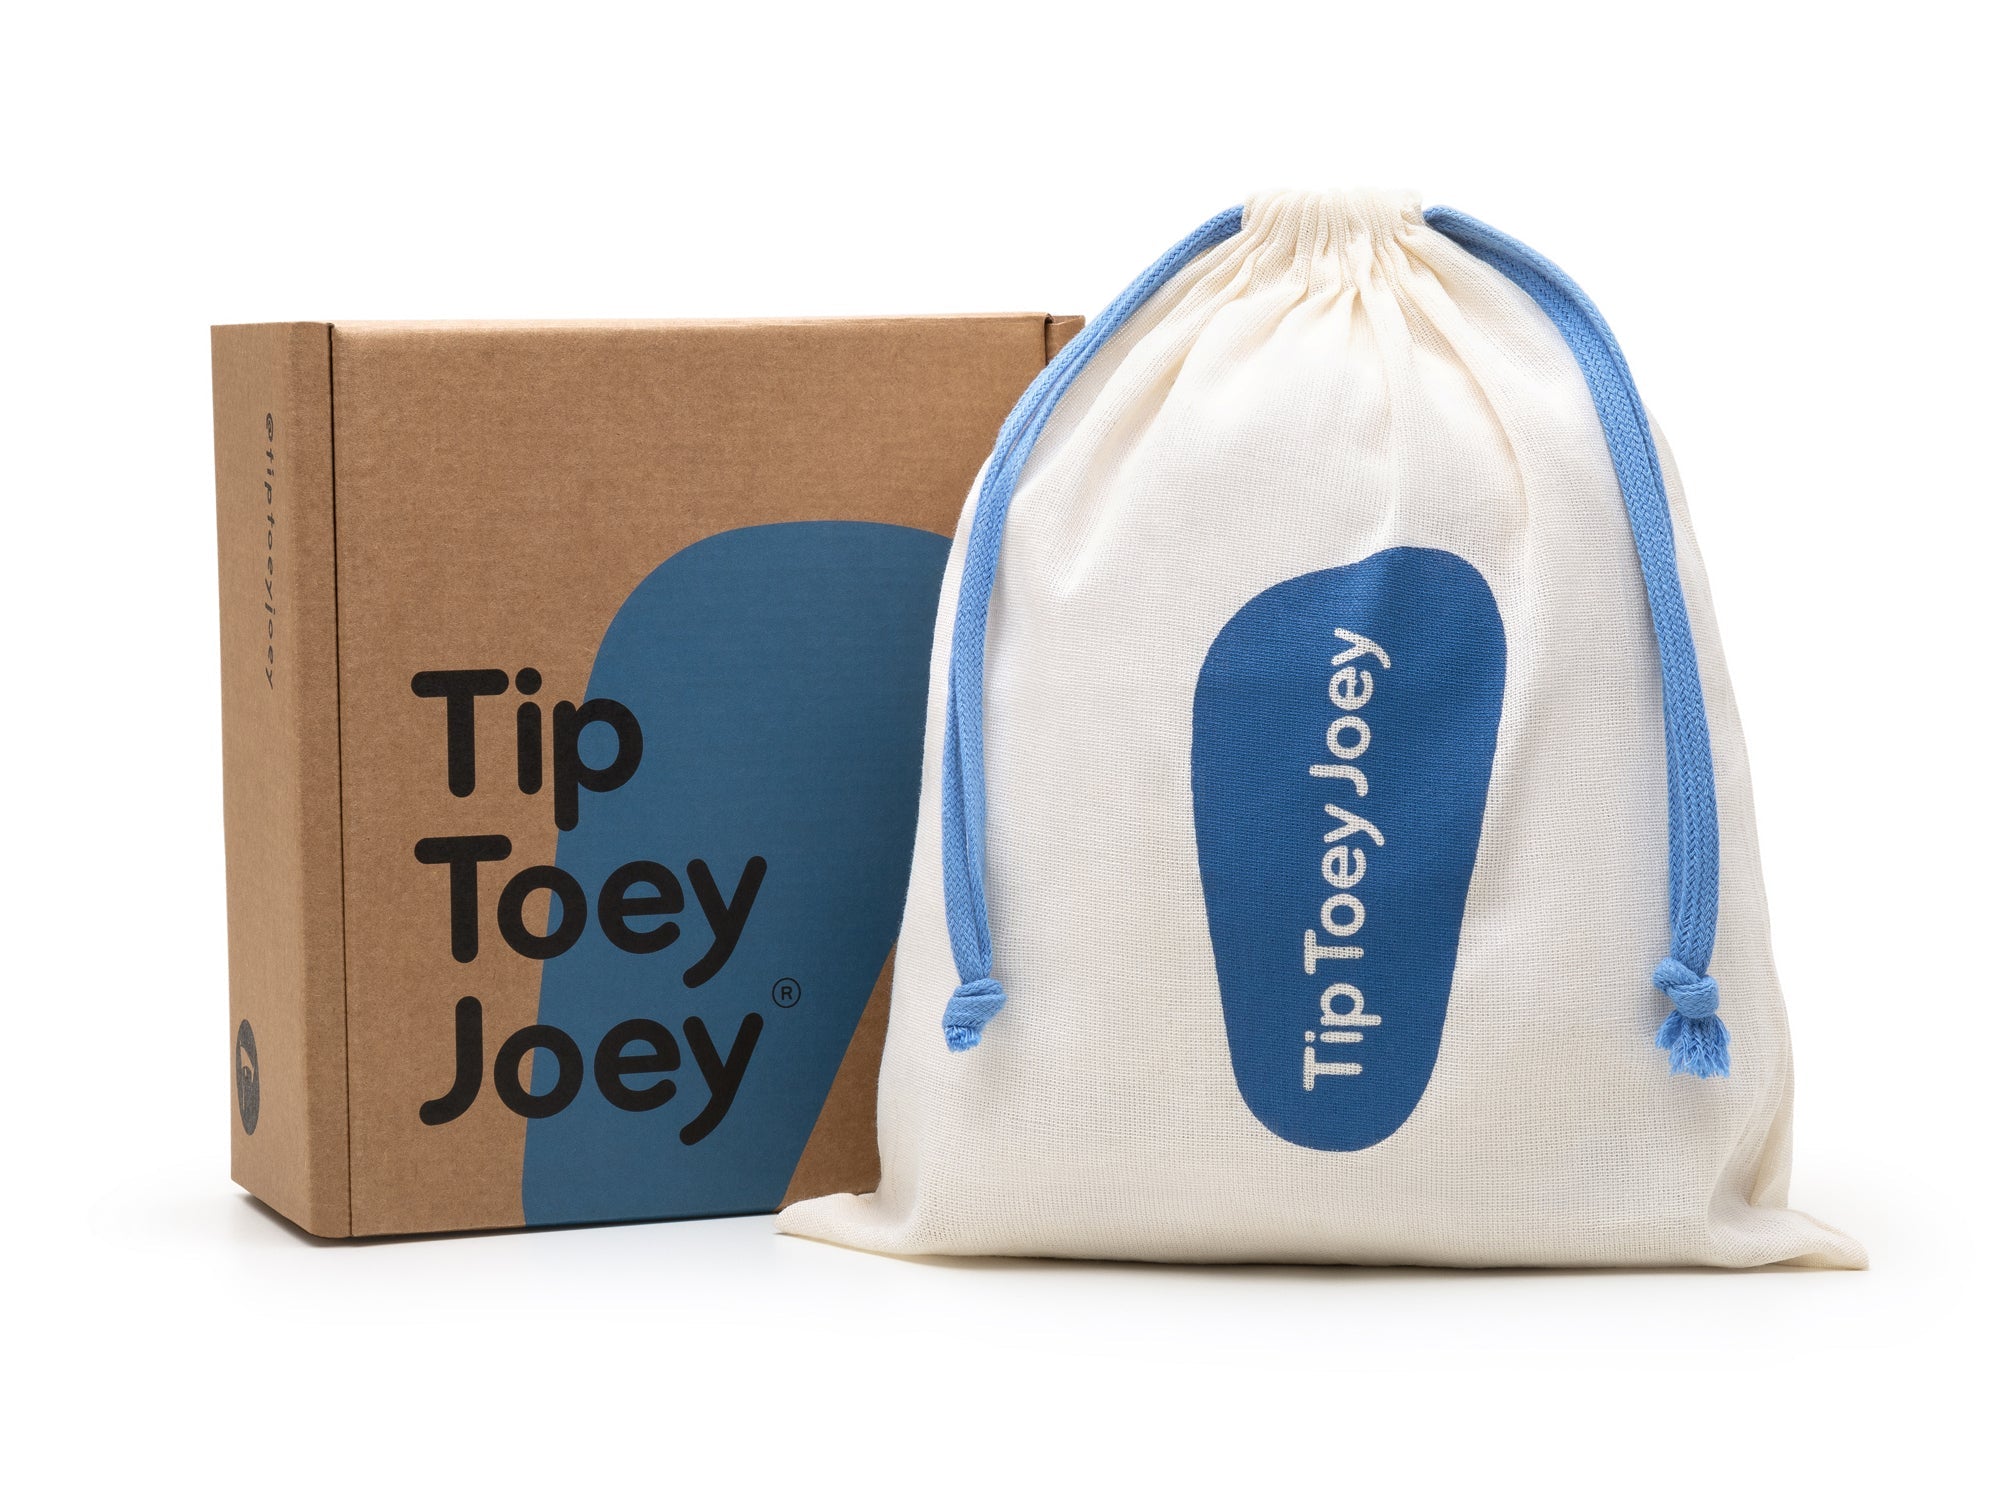 Tip Toey Joey - Gold Criss Cross Sandals (Run&Play)